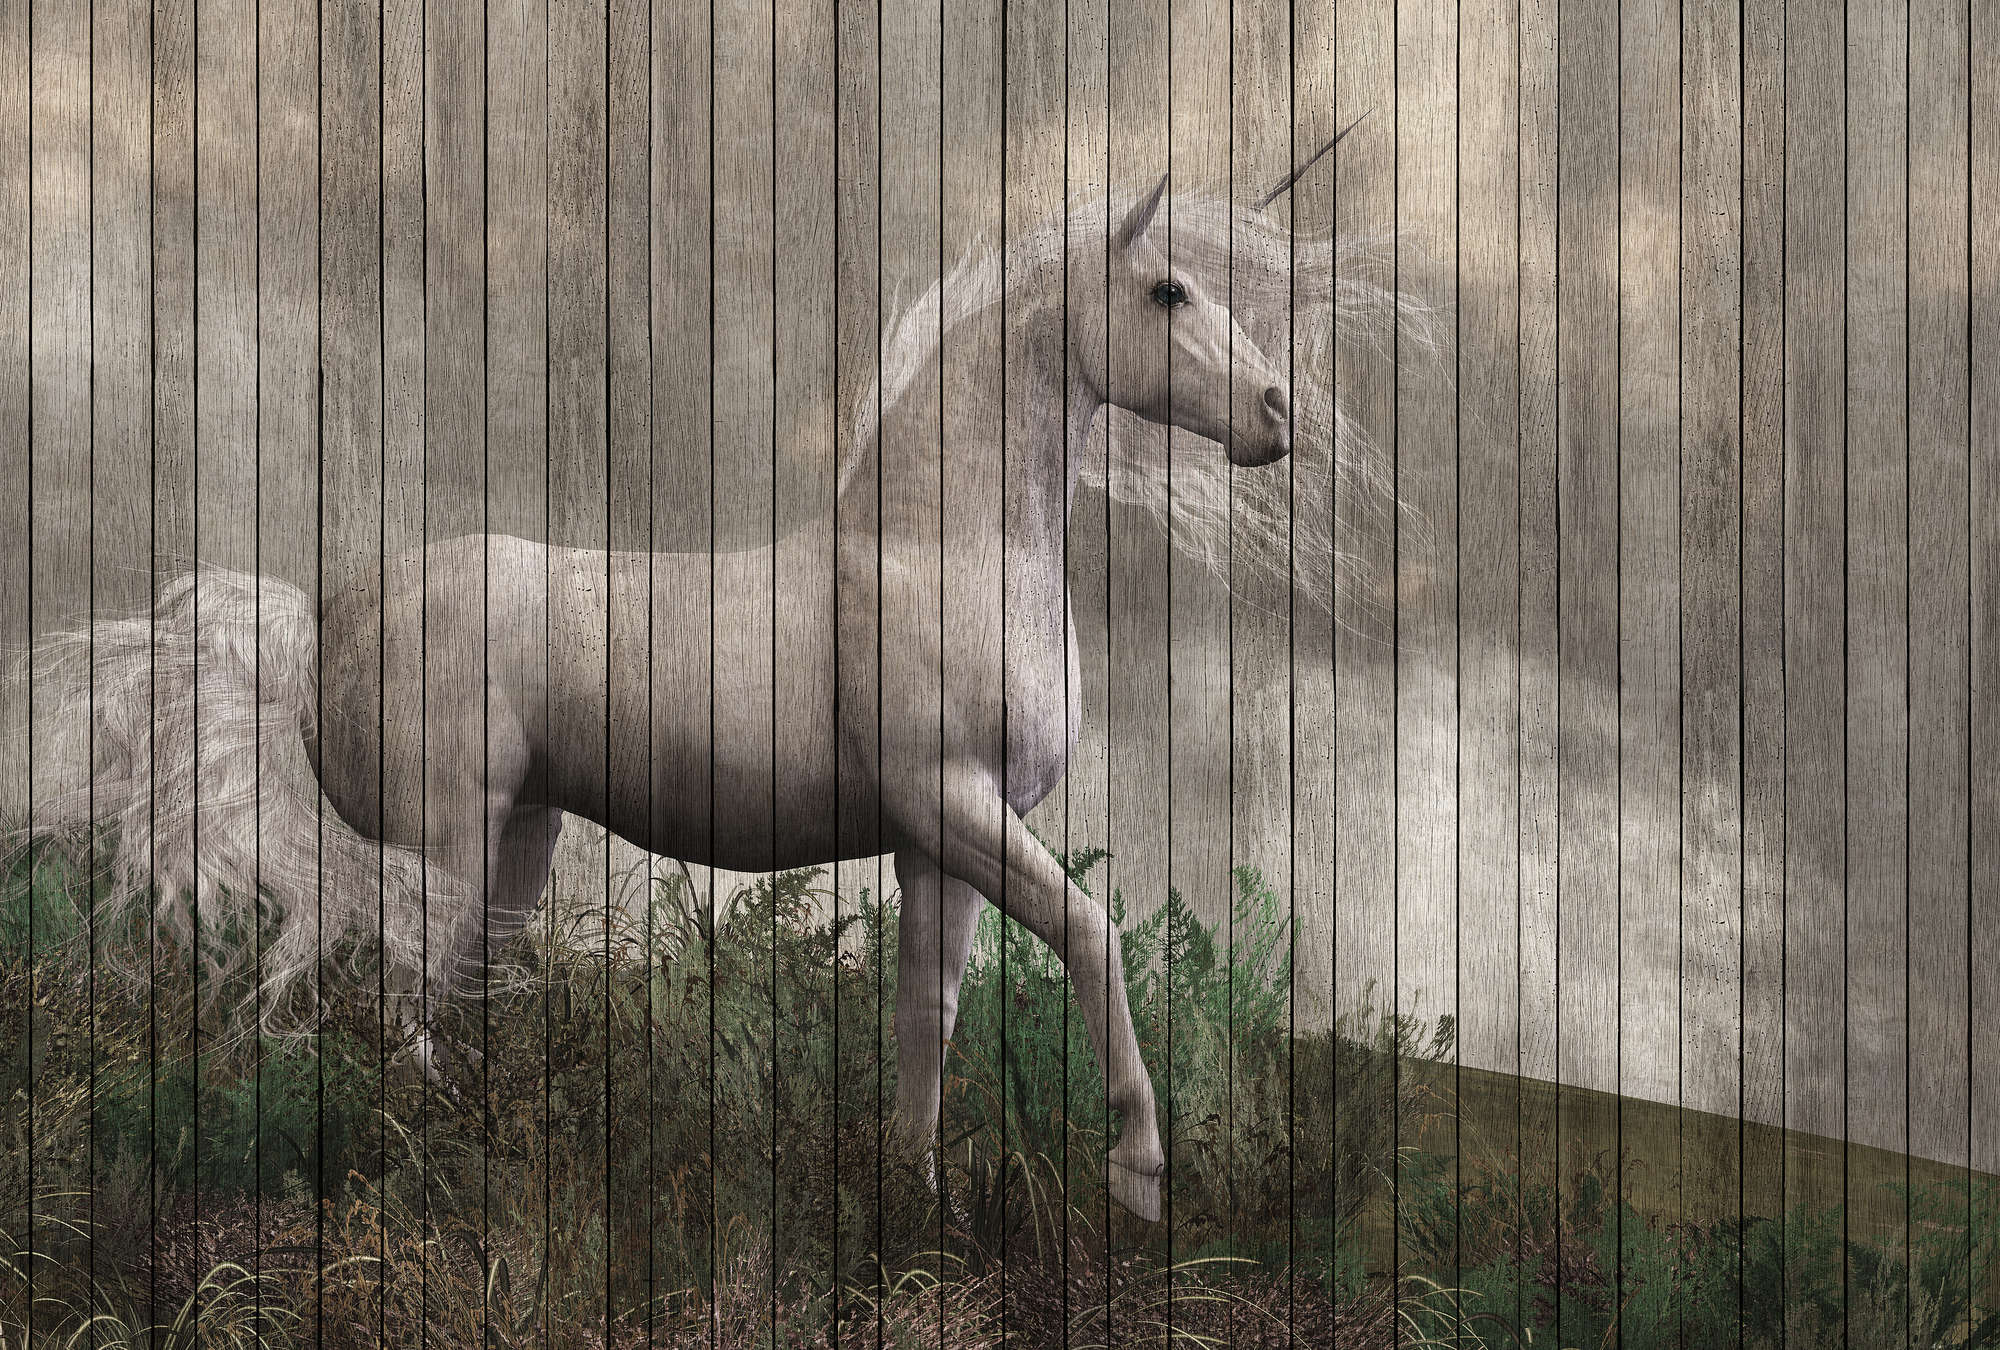             Fantasy 3 - Carta da parati con foto di unicorno con aspetto di tavola di legno - Beige, Marrone | Vello liscio opaco
        